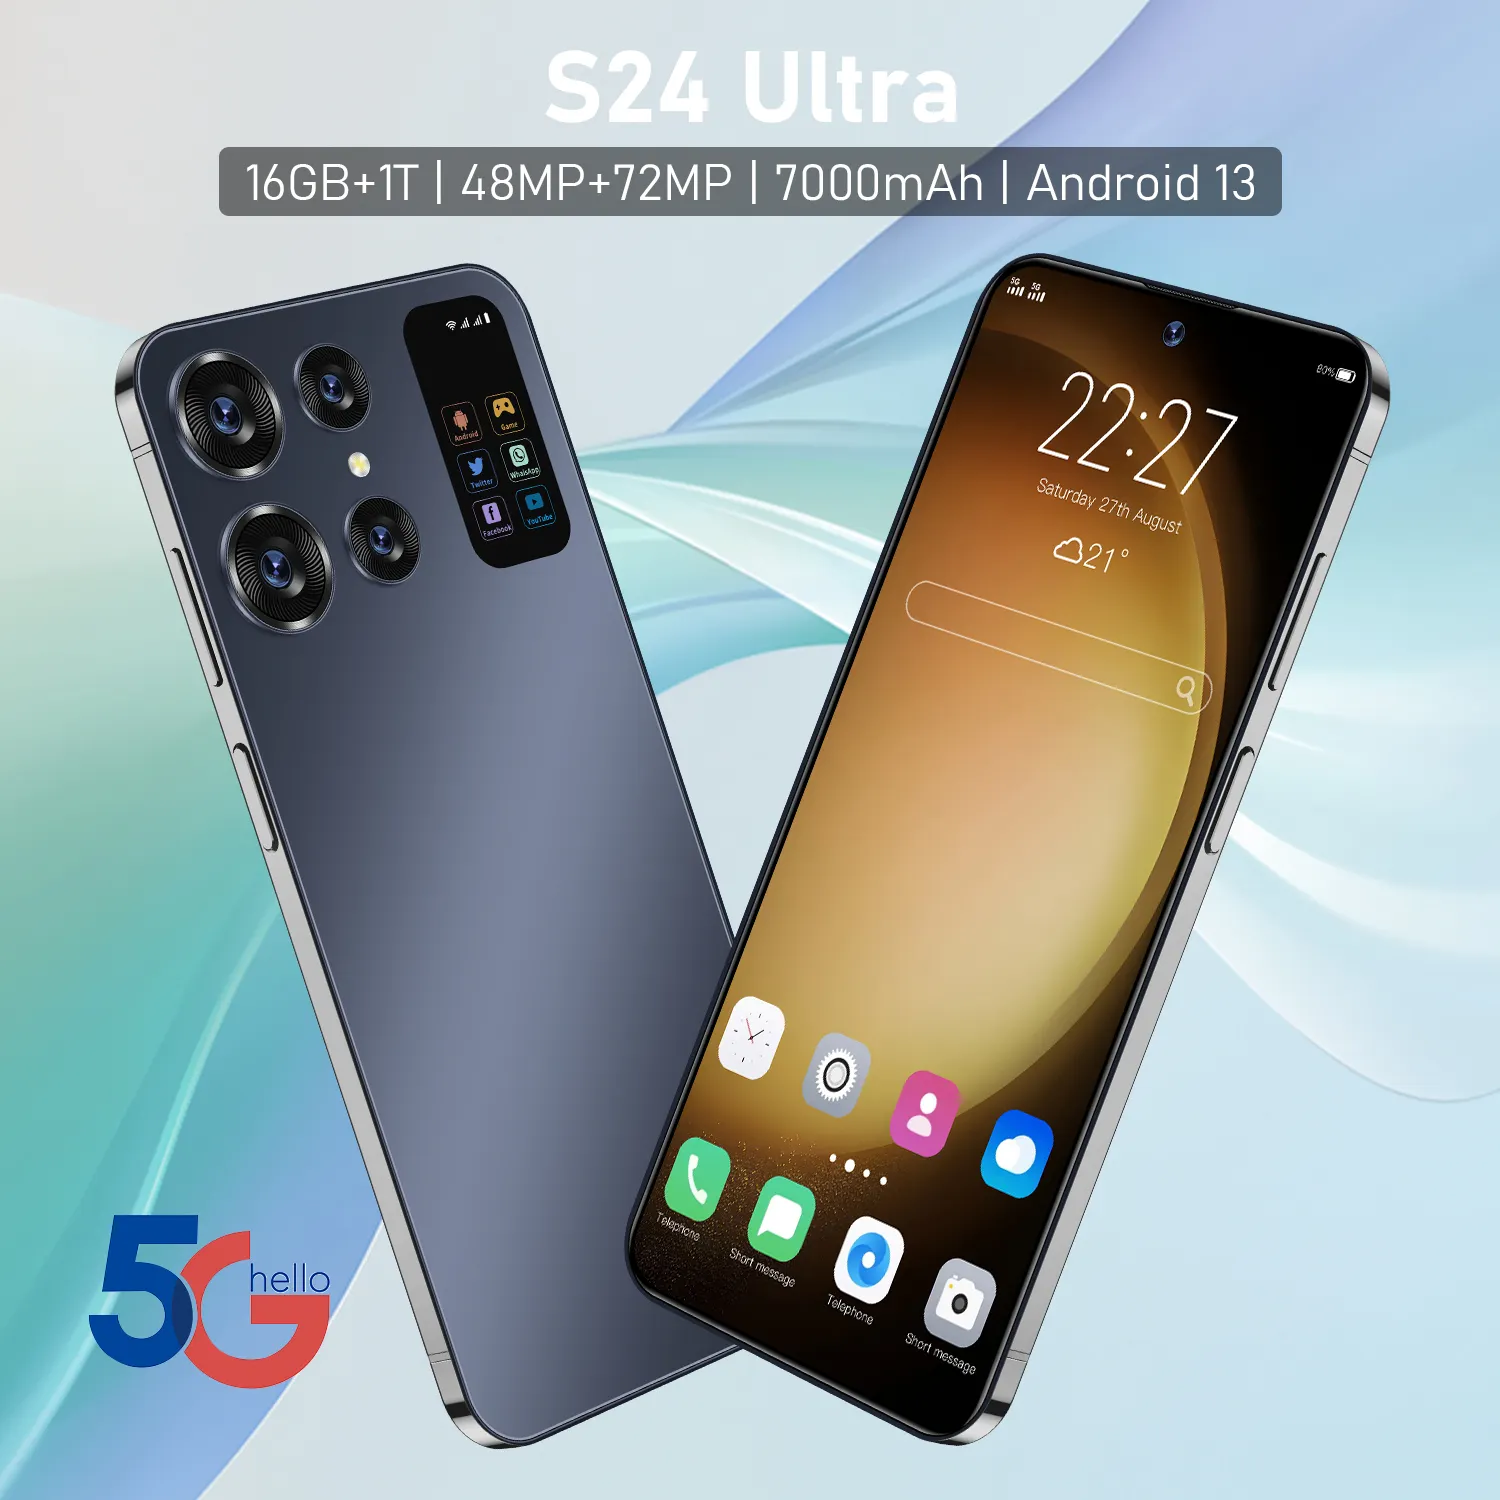 Precio de fábrica S24 uI tra teléfono móvil desbloqueado 3G 4G 5G teléfono móvil con batería de iones de litio de alta densidad con características ricas